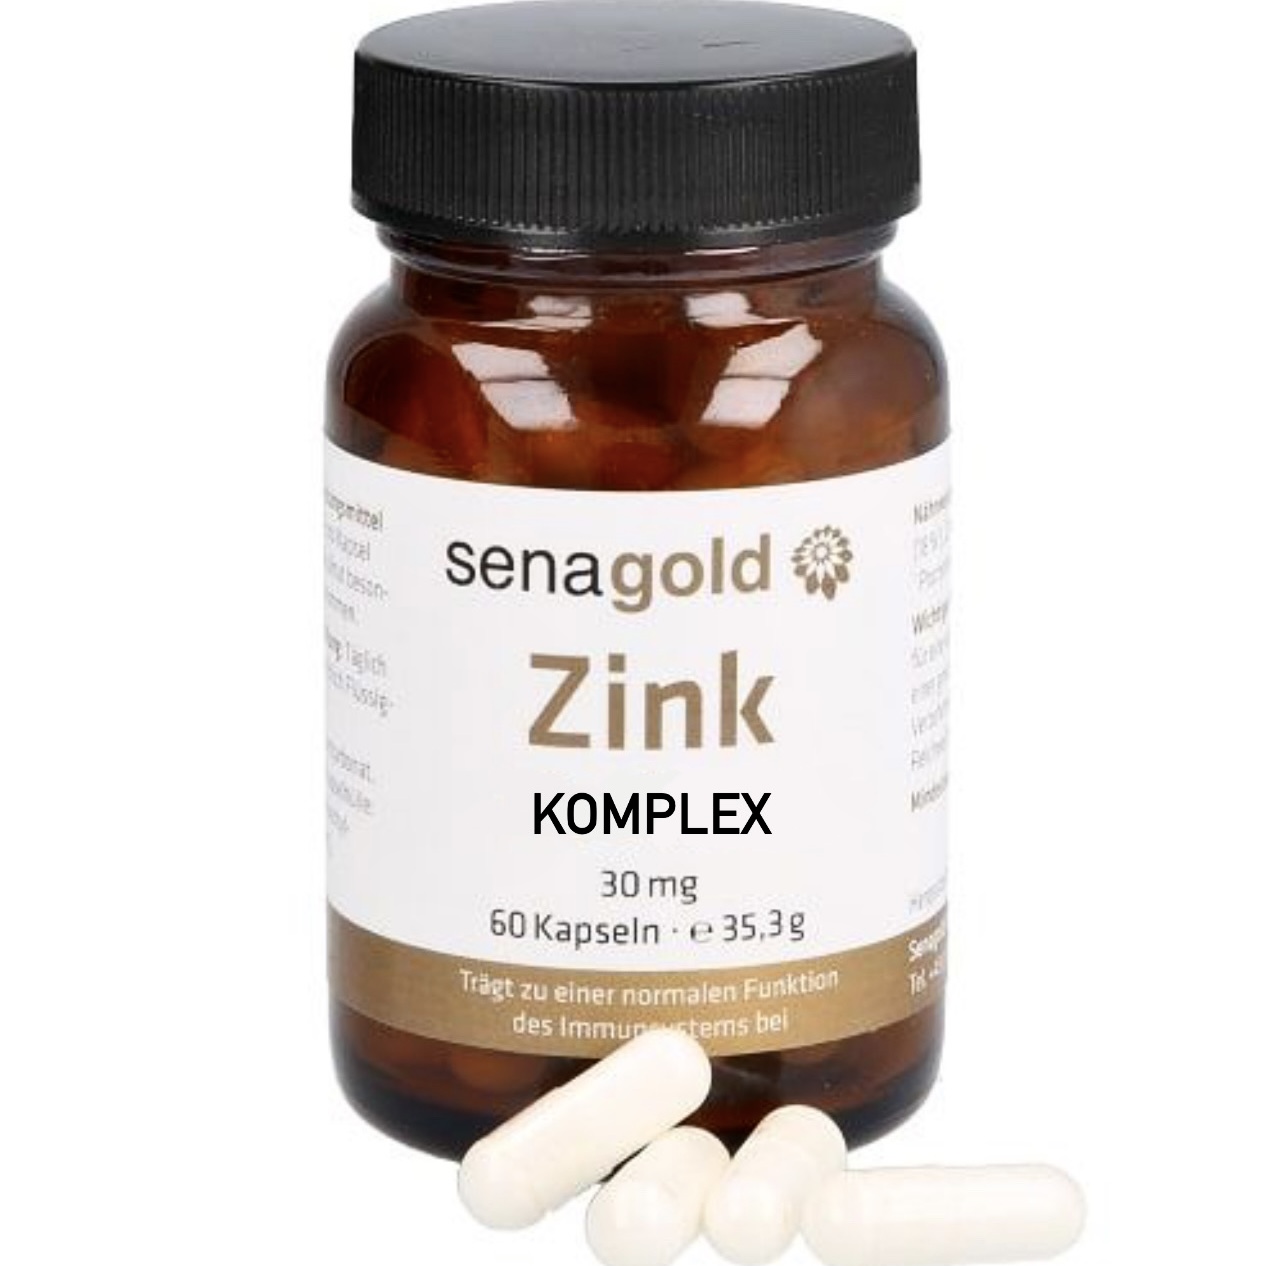 Senagold Zink Komplex Kapseln 30 mg - 1 x 60 St.